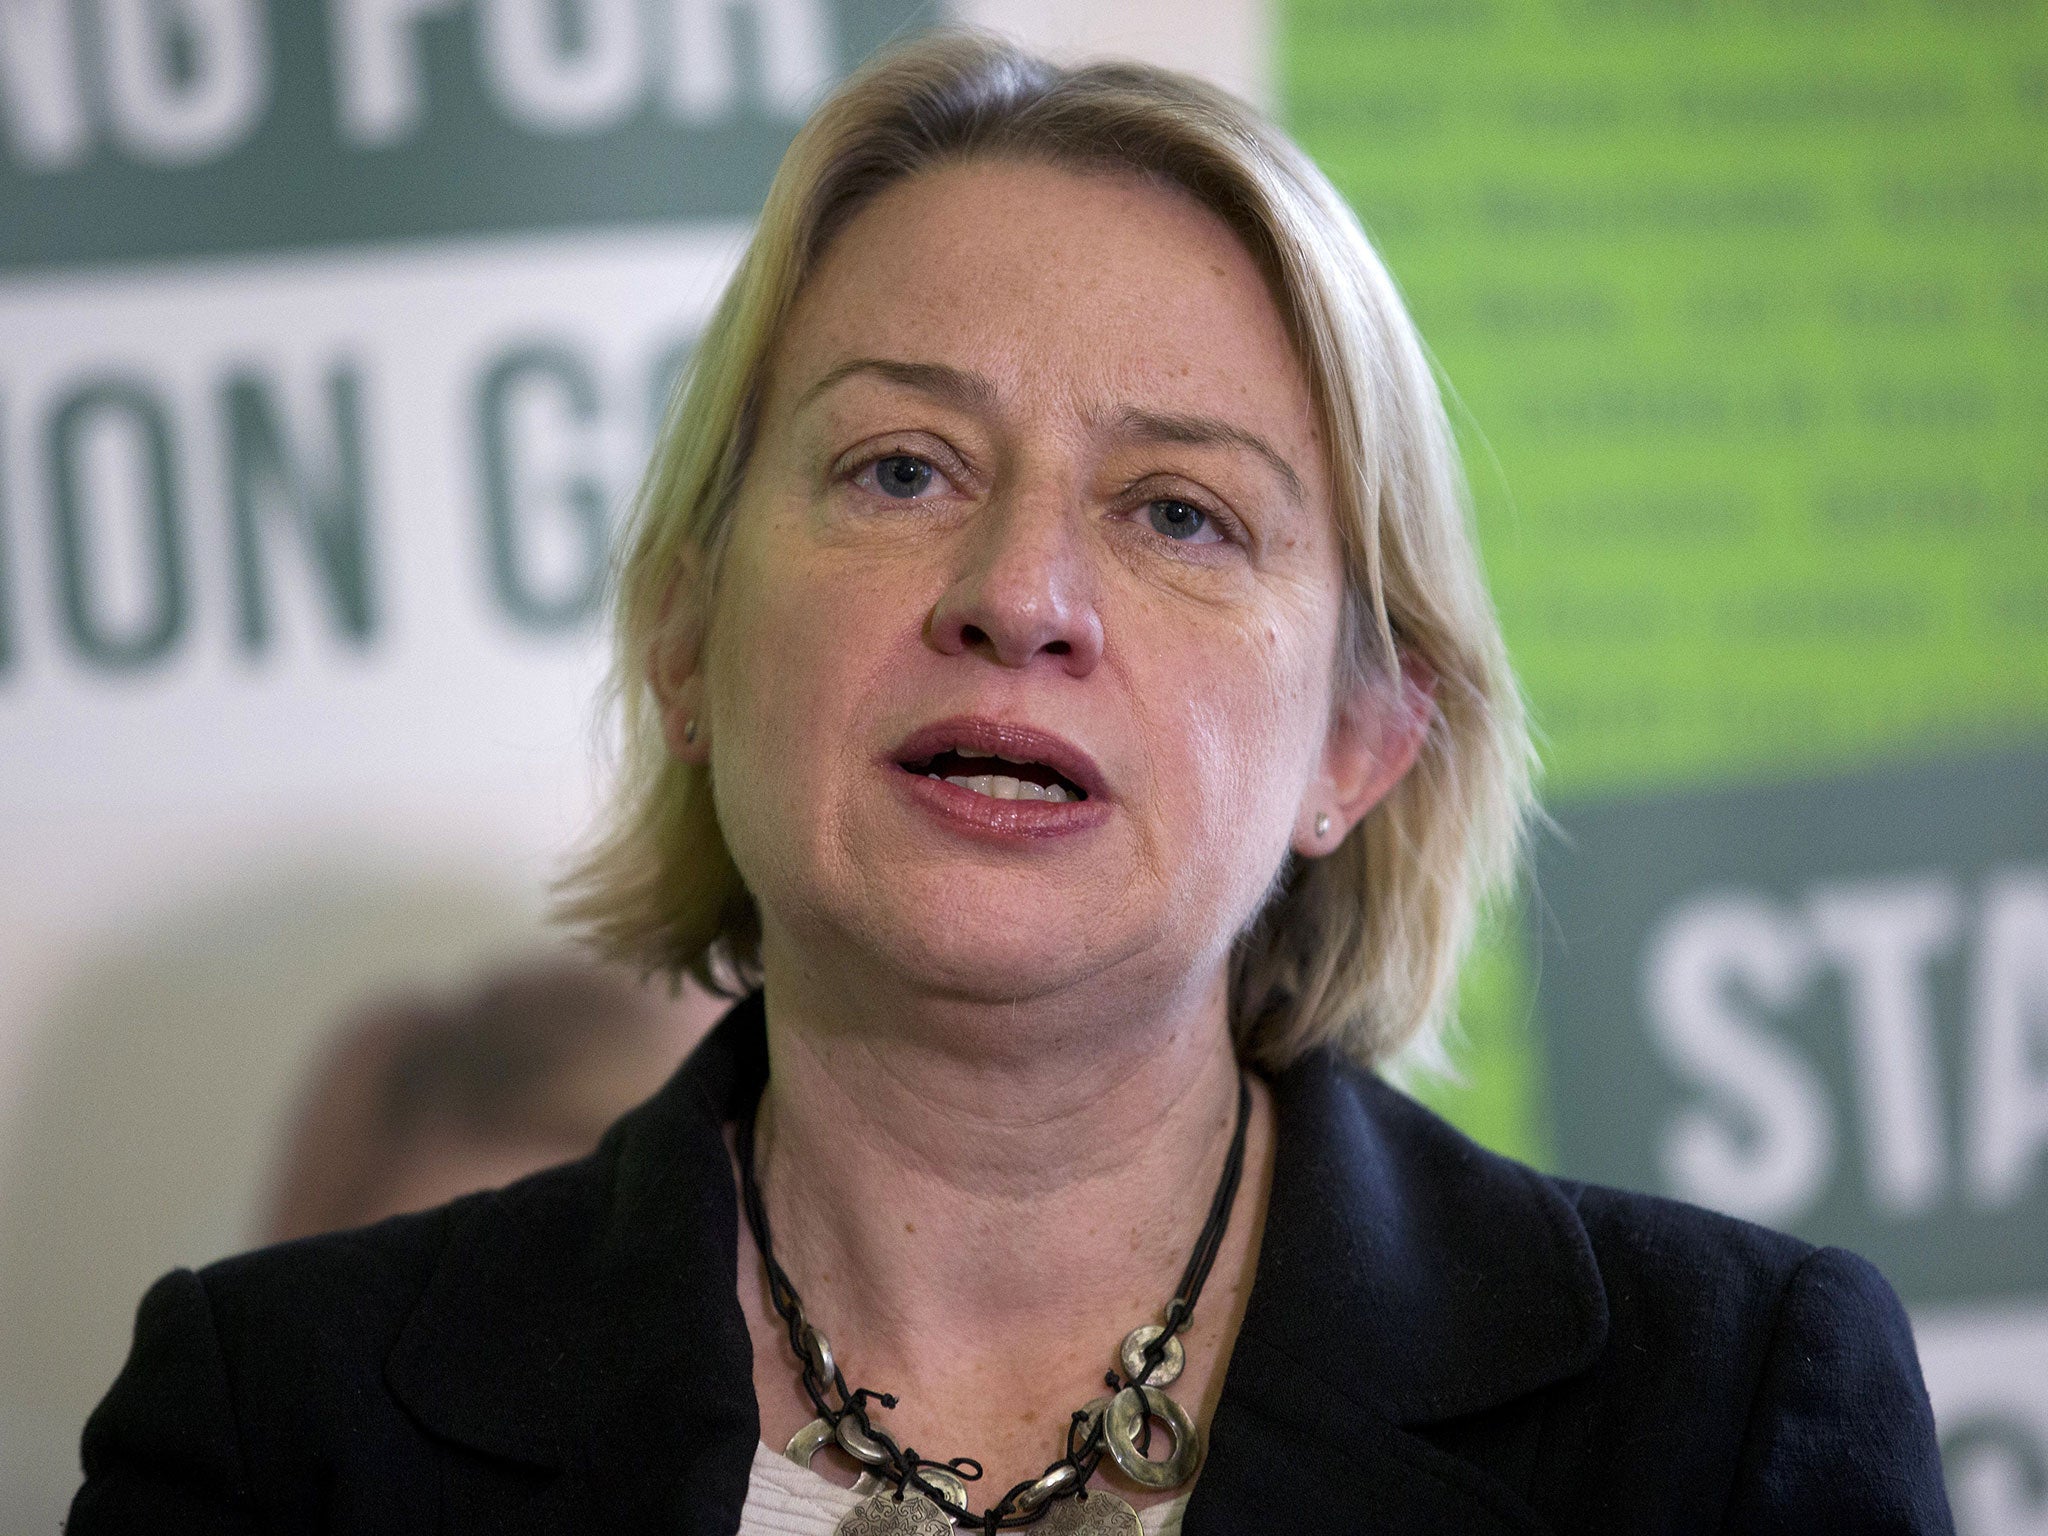 Green party leader Natalie Bennett